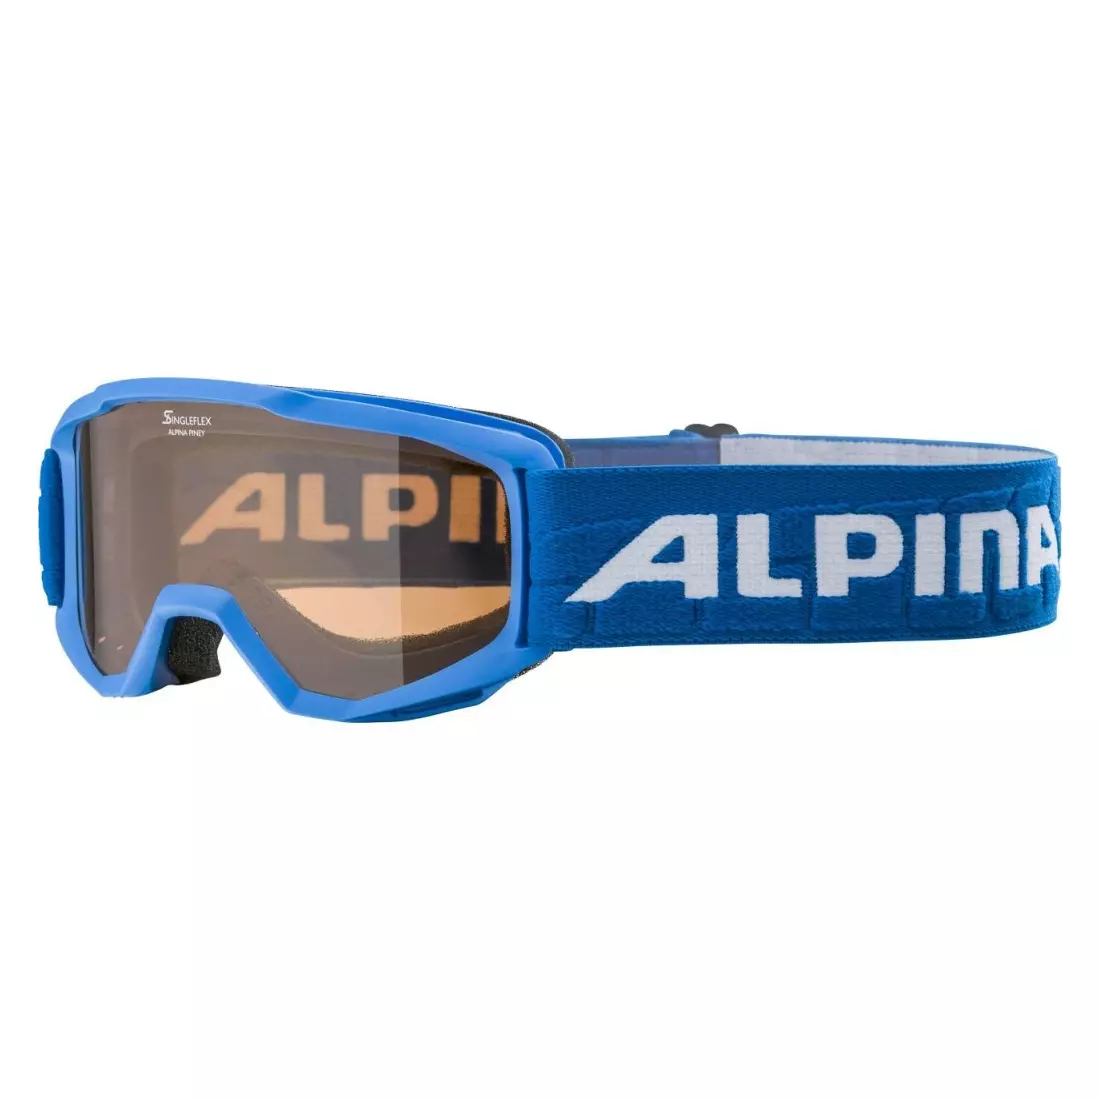 Sí / snowboard szemüveg ALPINA JUNIOR PINEY BLUE A7268481